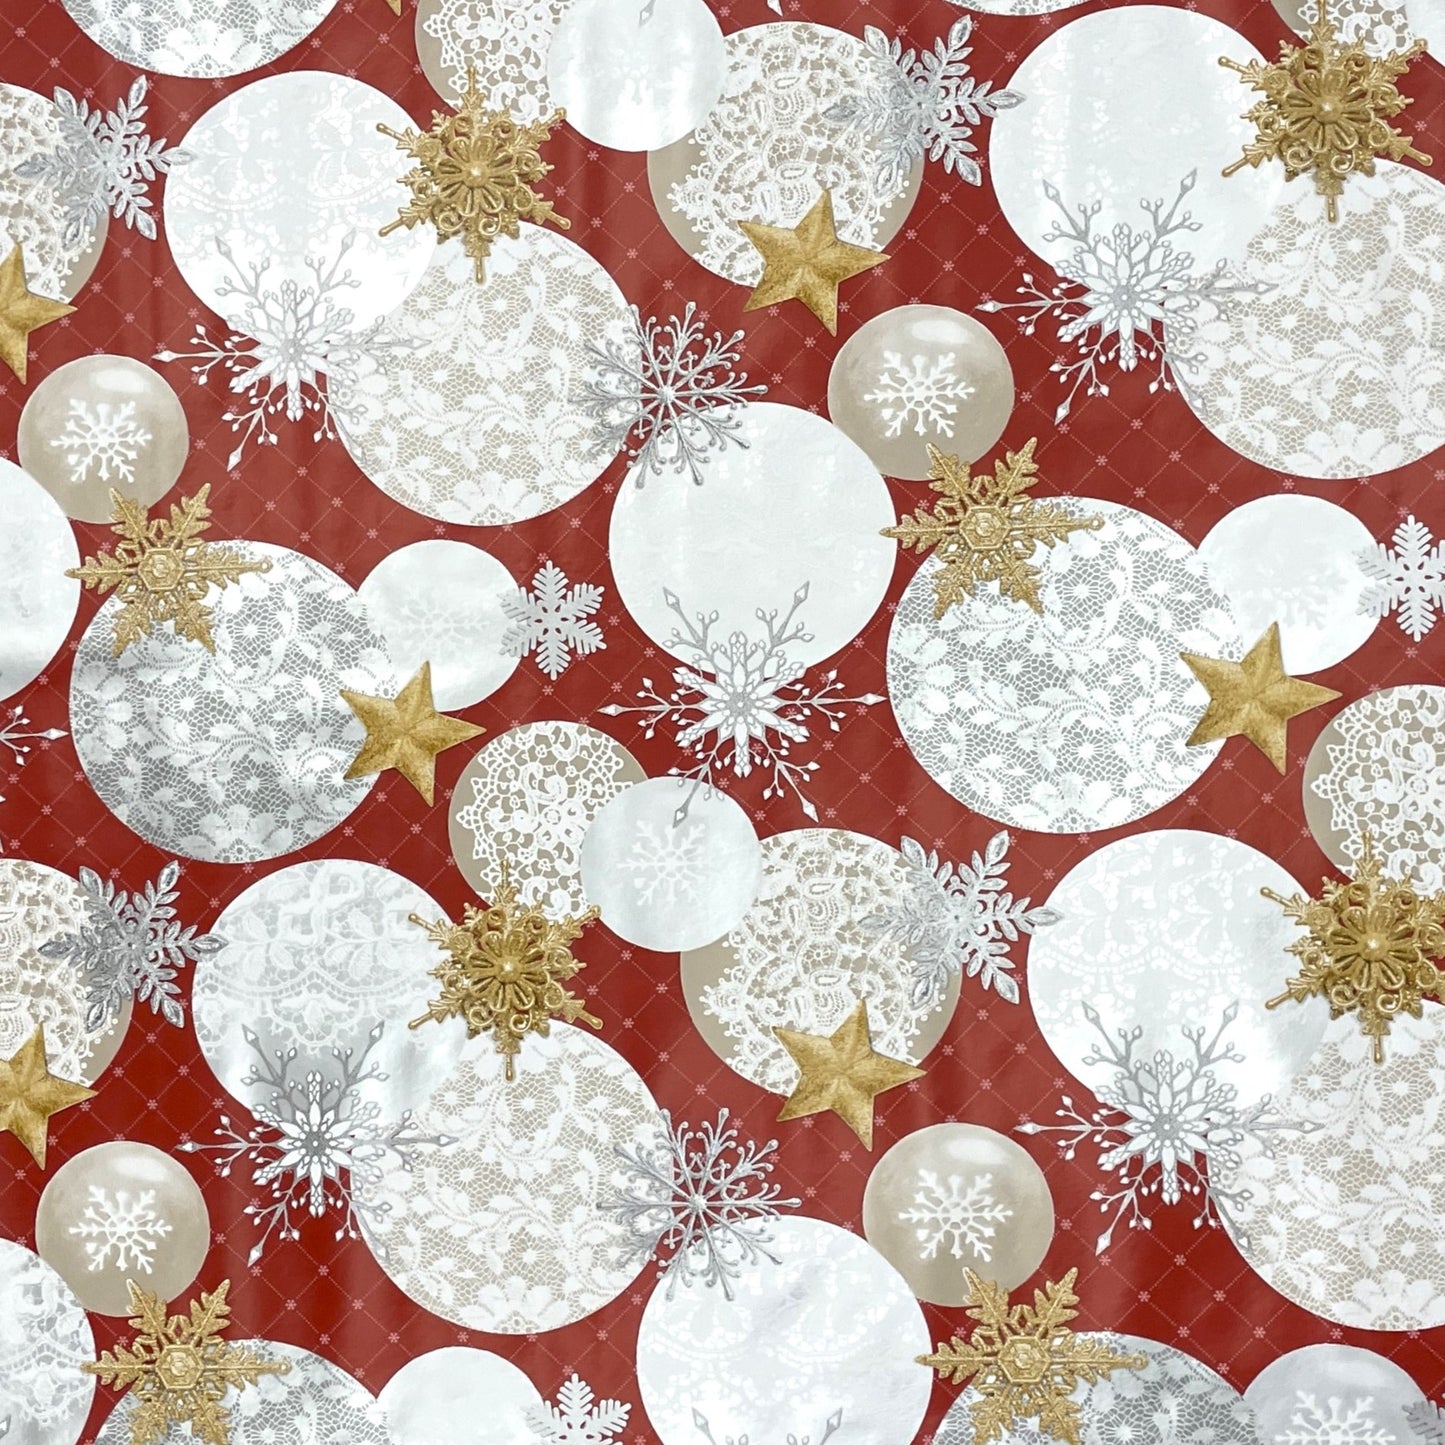 KEVKUS Wachstuch Tischdecke Weihnachten B7000-03 goldene Sterne rot Kugeln eckig rund oval